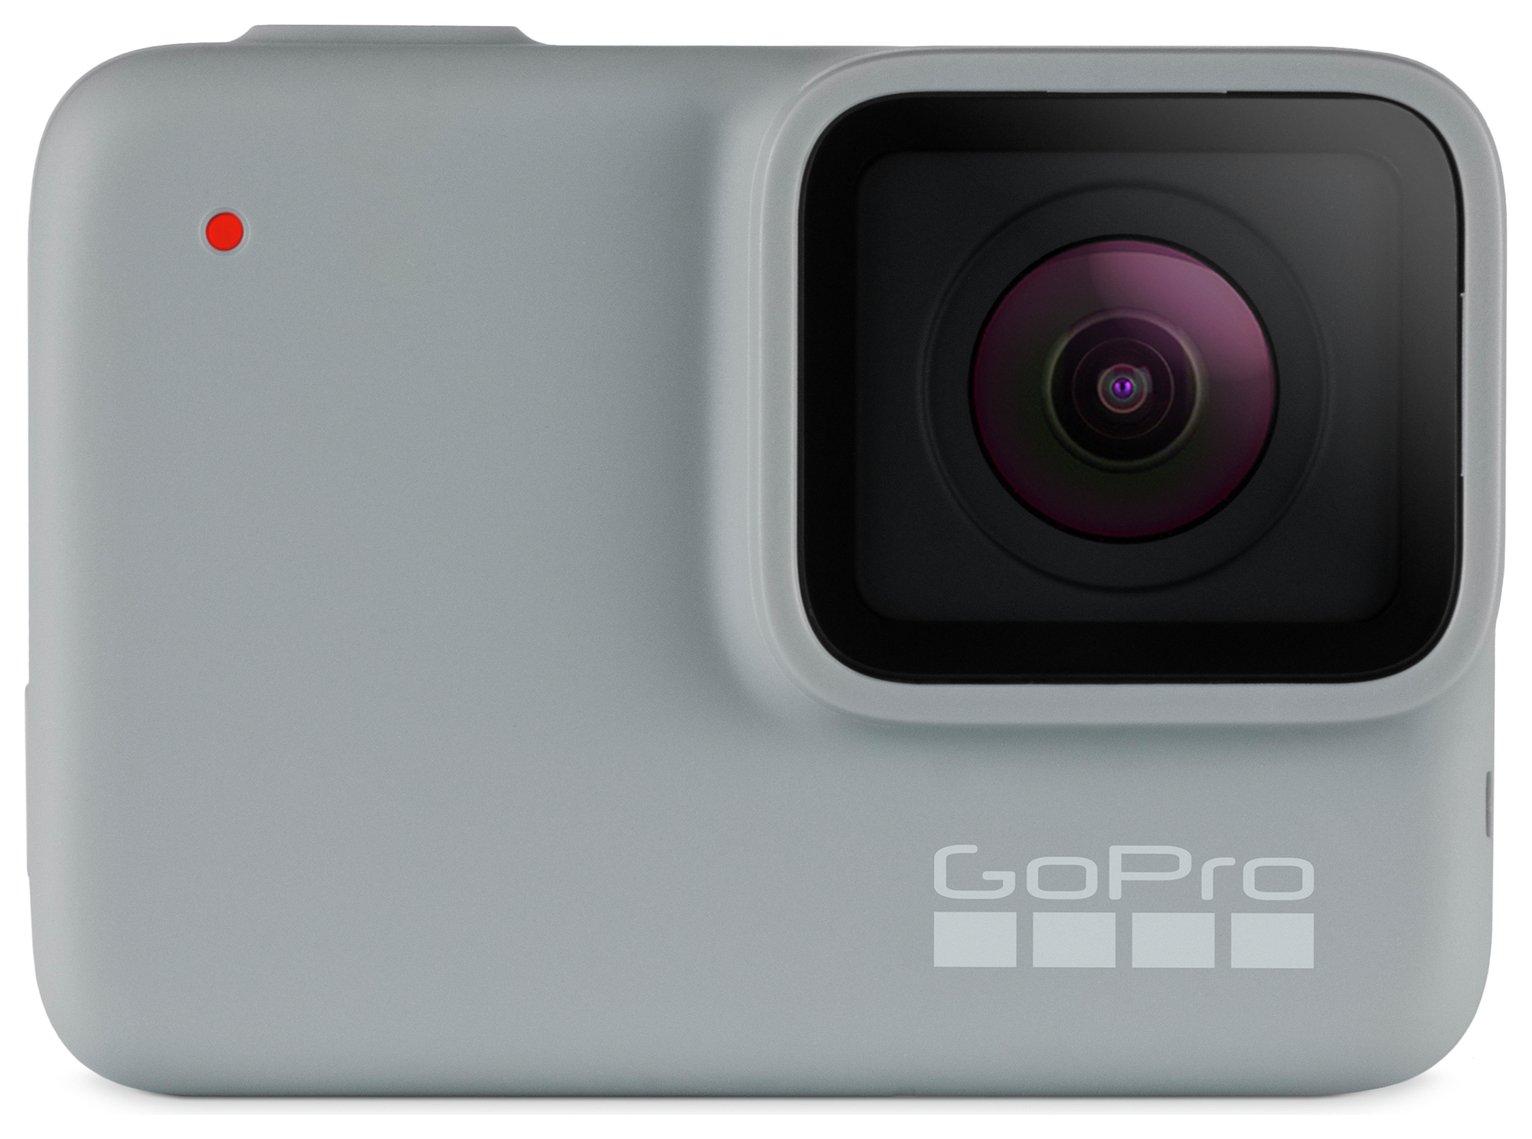 GoPro HERO7 White CHDHB-601-RW Action Camera Review